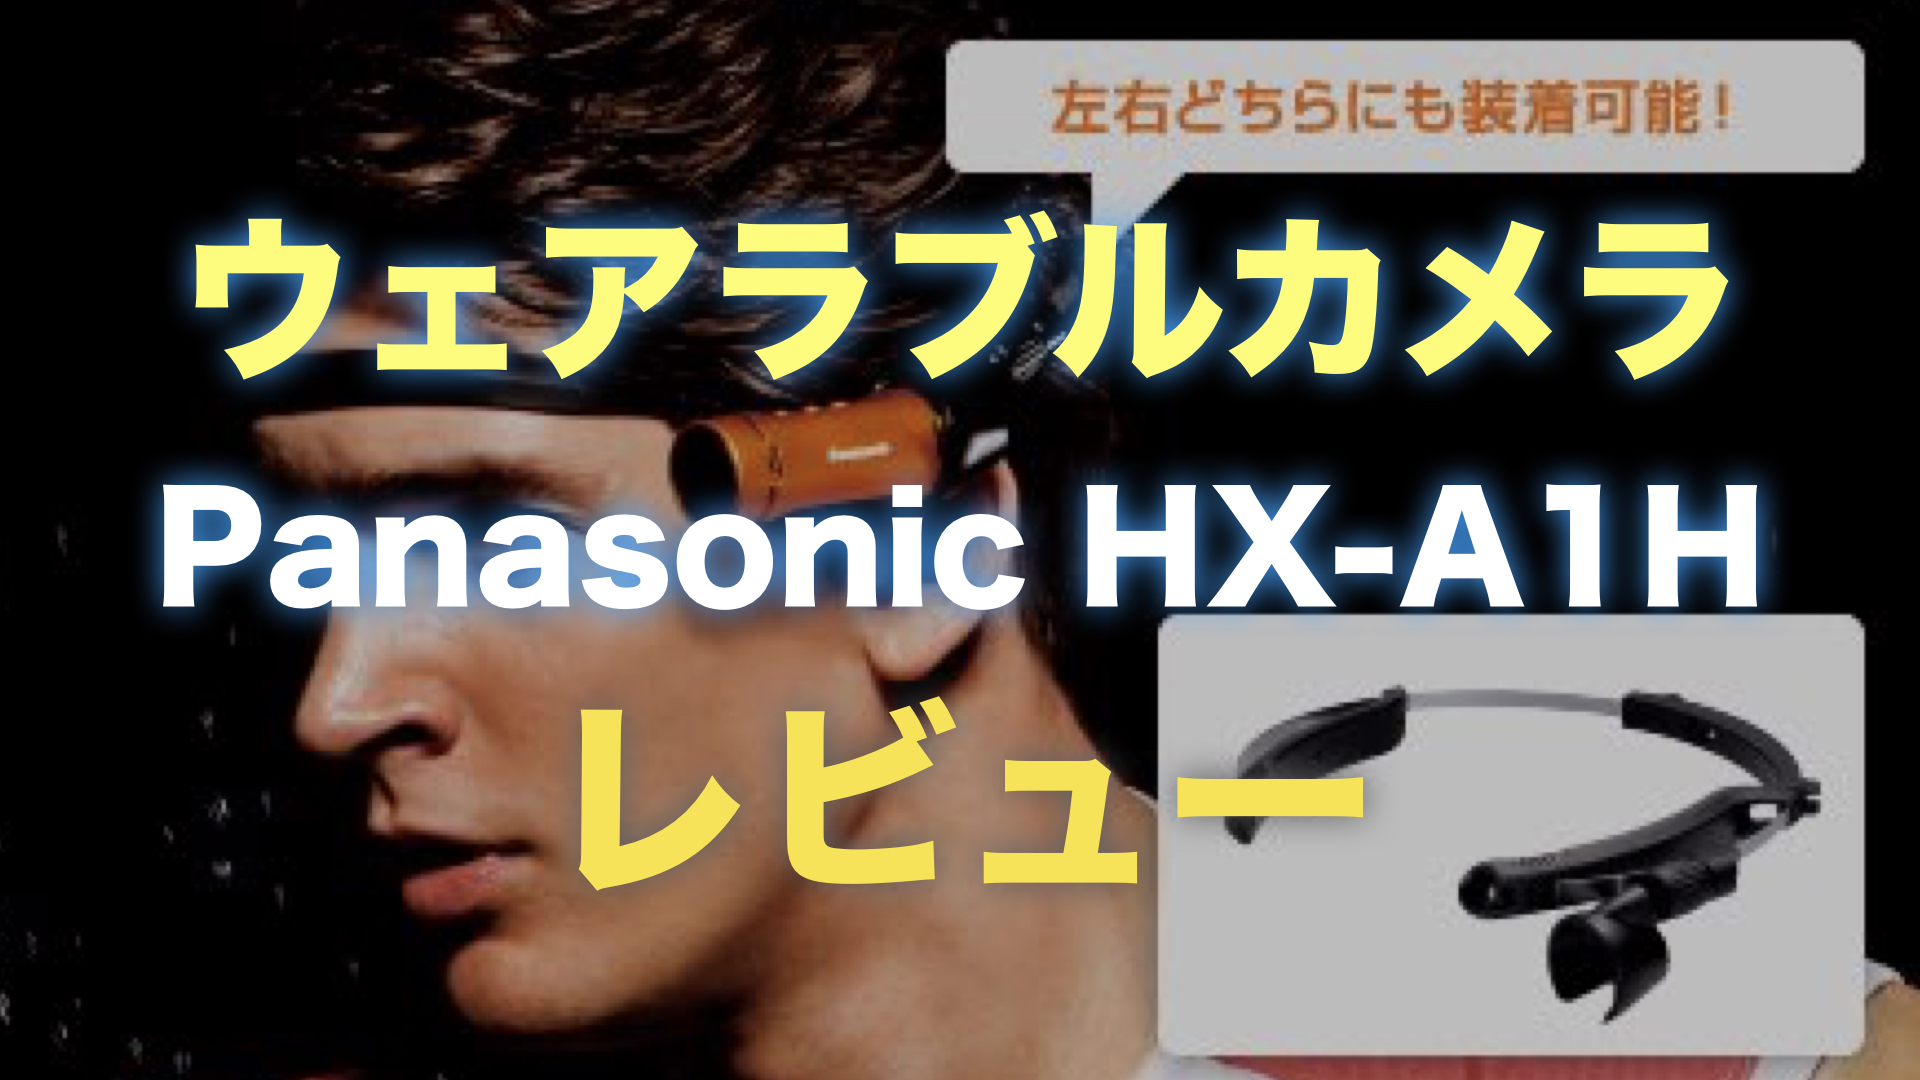 ウェアラブルカメラPanasonic HX-A1Hレビュー